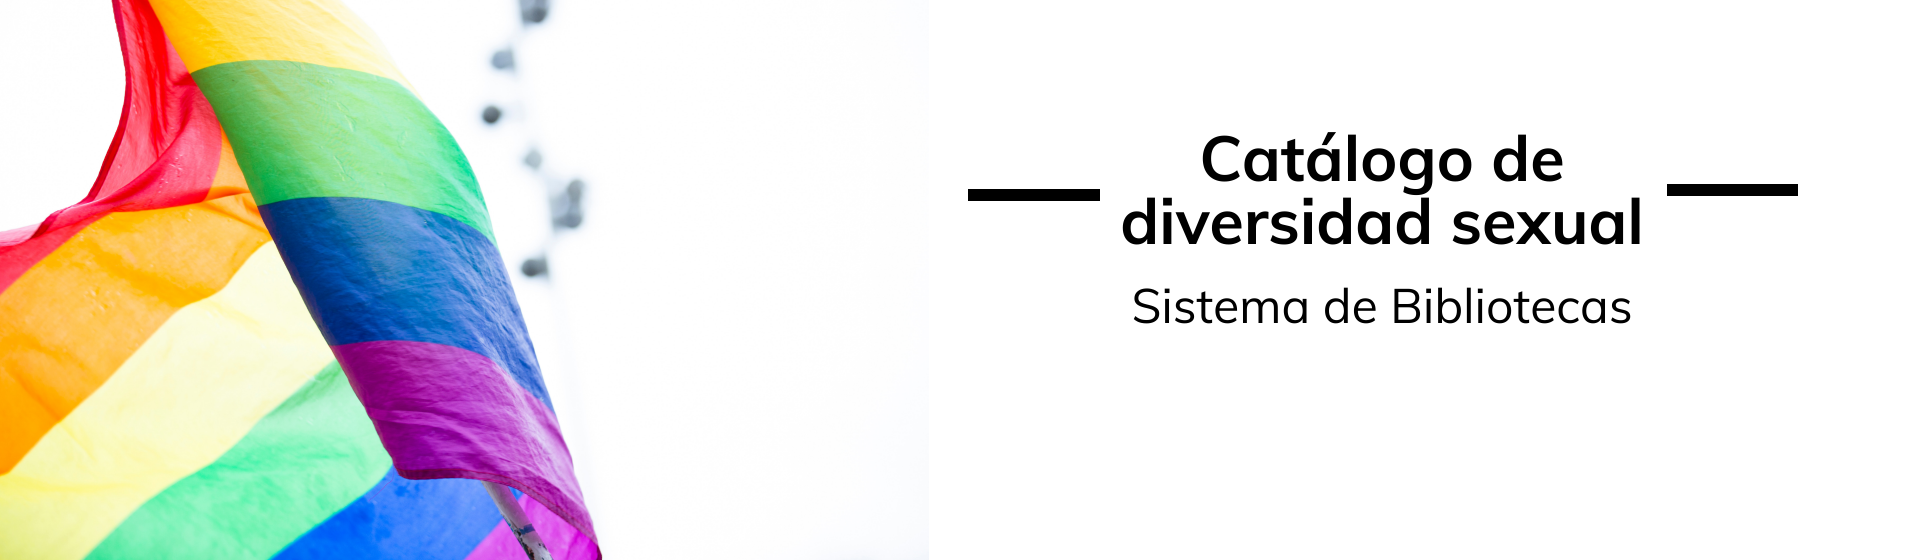 Catálogo Diversidad Sexual | Uniandes